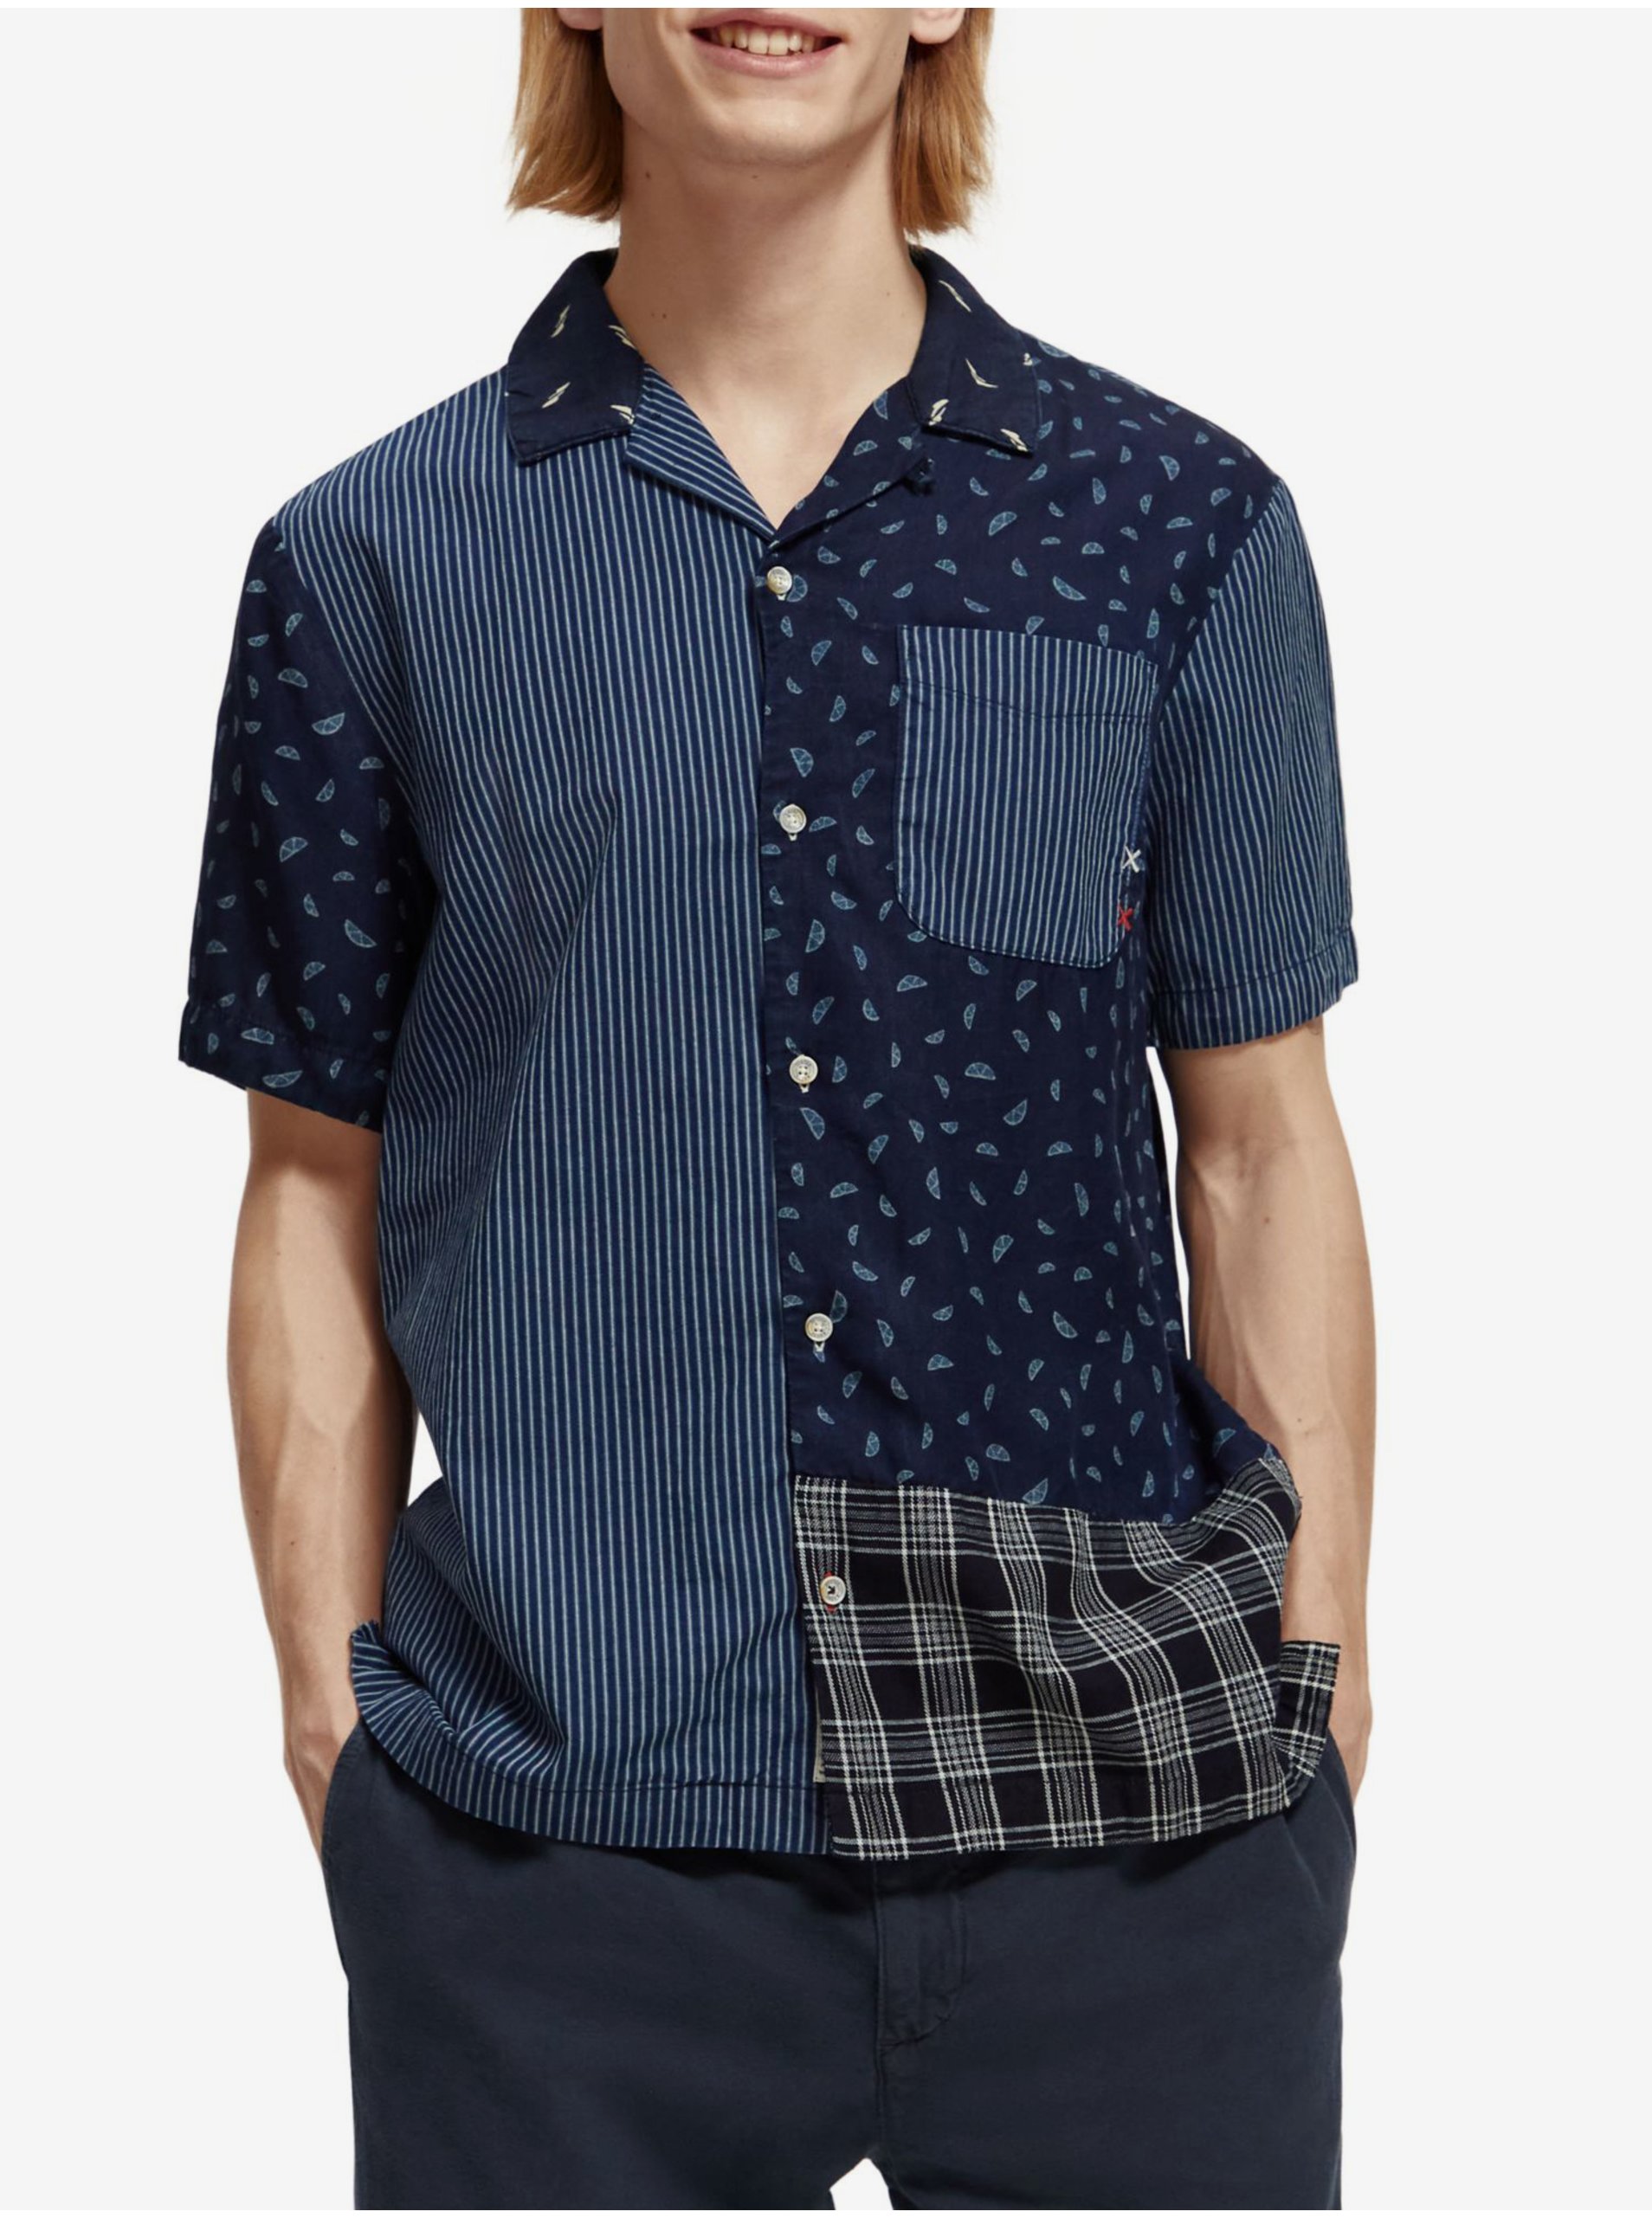 E-shop Tmavě modrá pánská vzorovaná košile s krátkým rukávem Scotch & Soda